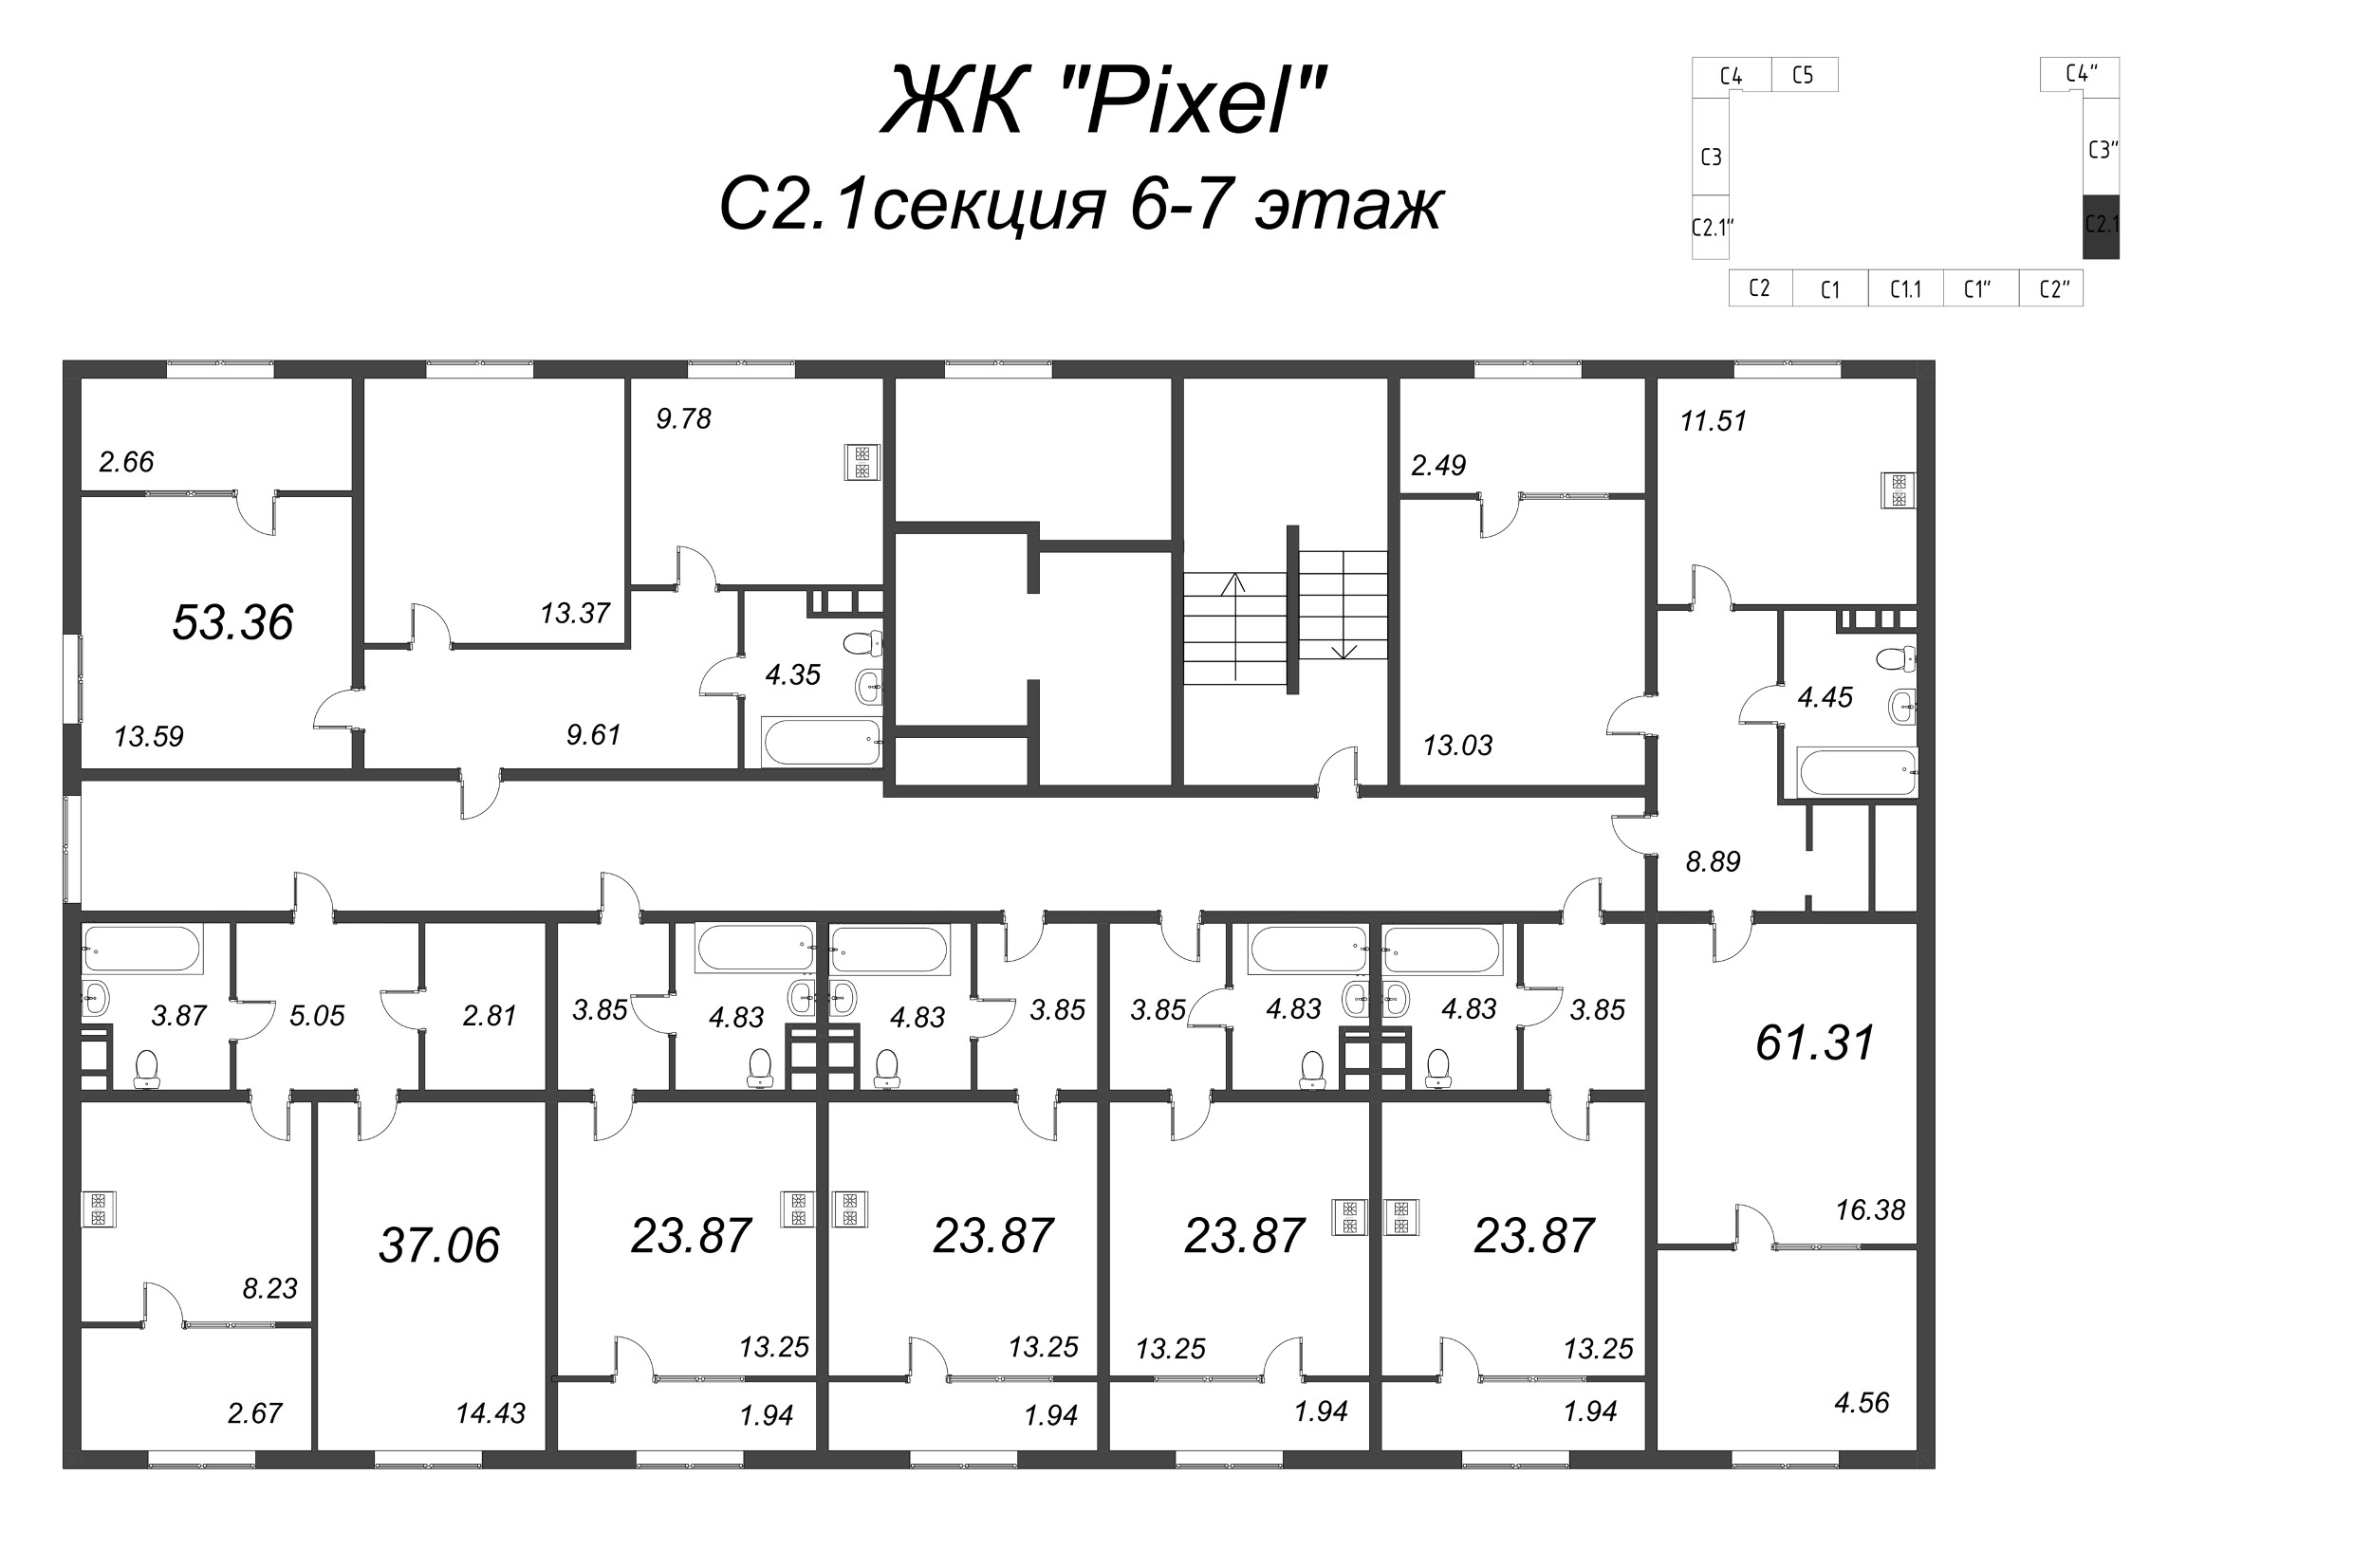 2-комнатная квартира, 53.36 м² в ЖК "Pixel" - планировка этажа